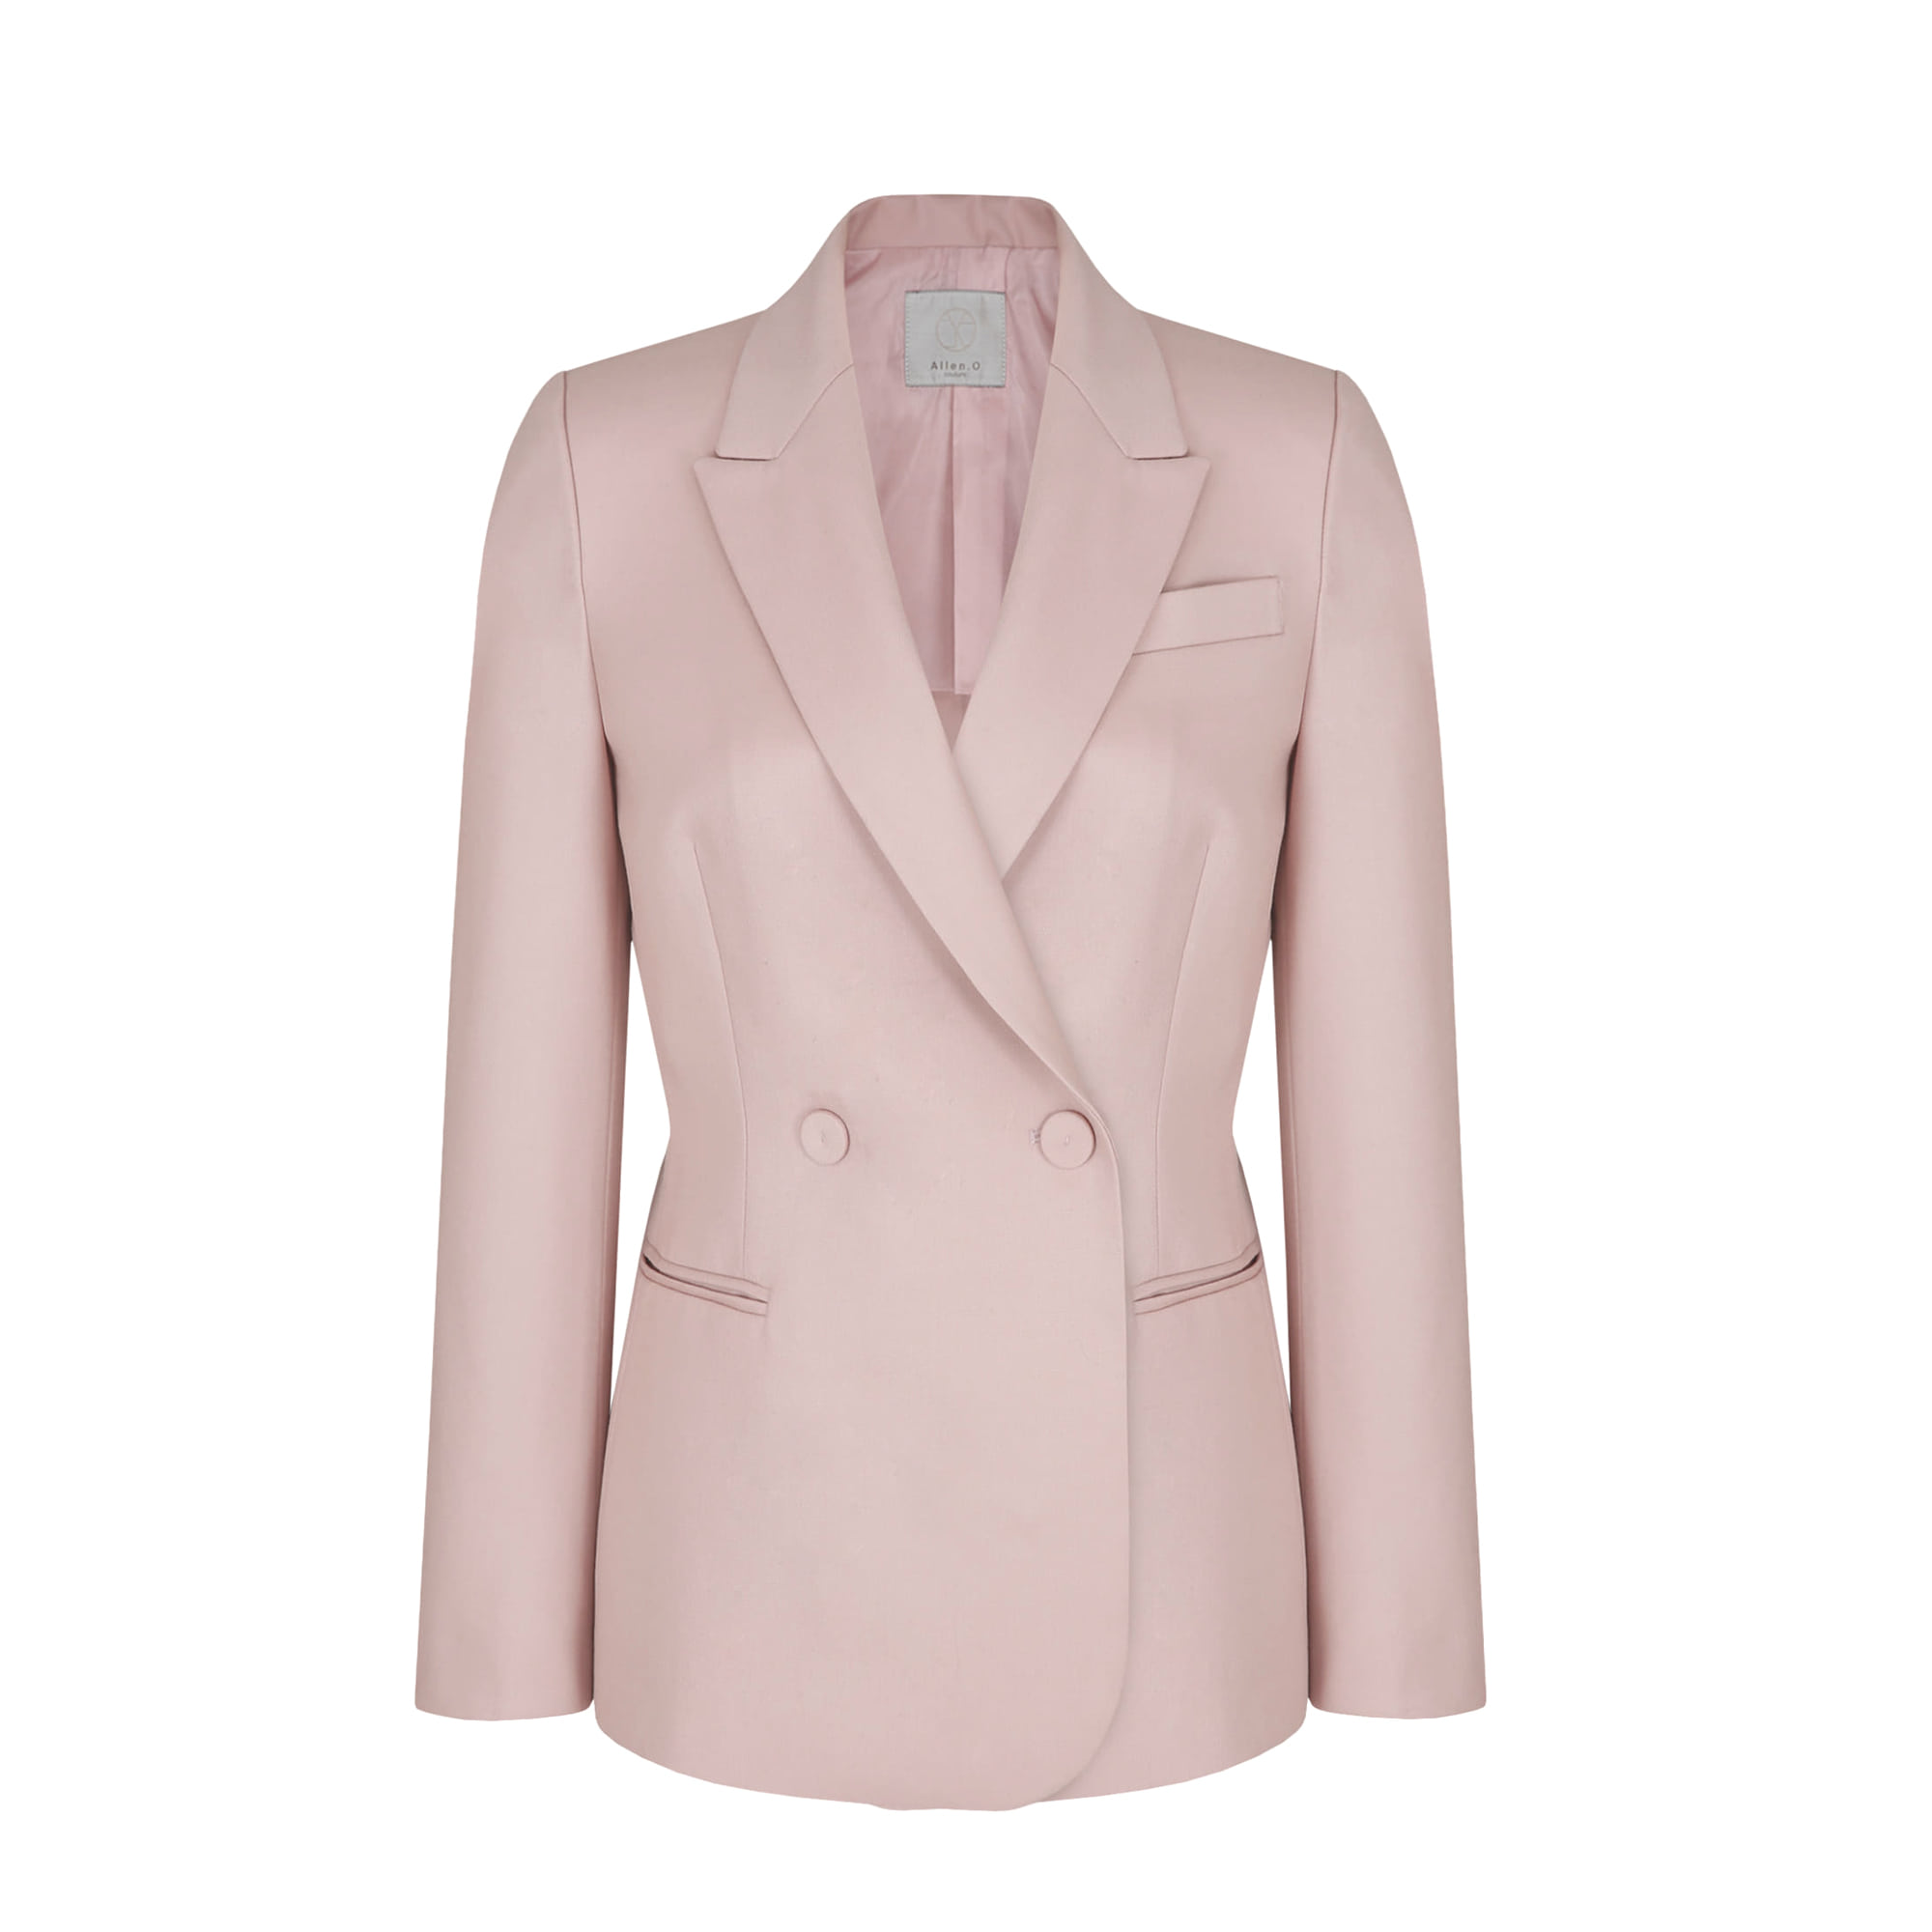 Signature Suit Jacket (Pink)